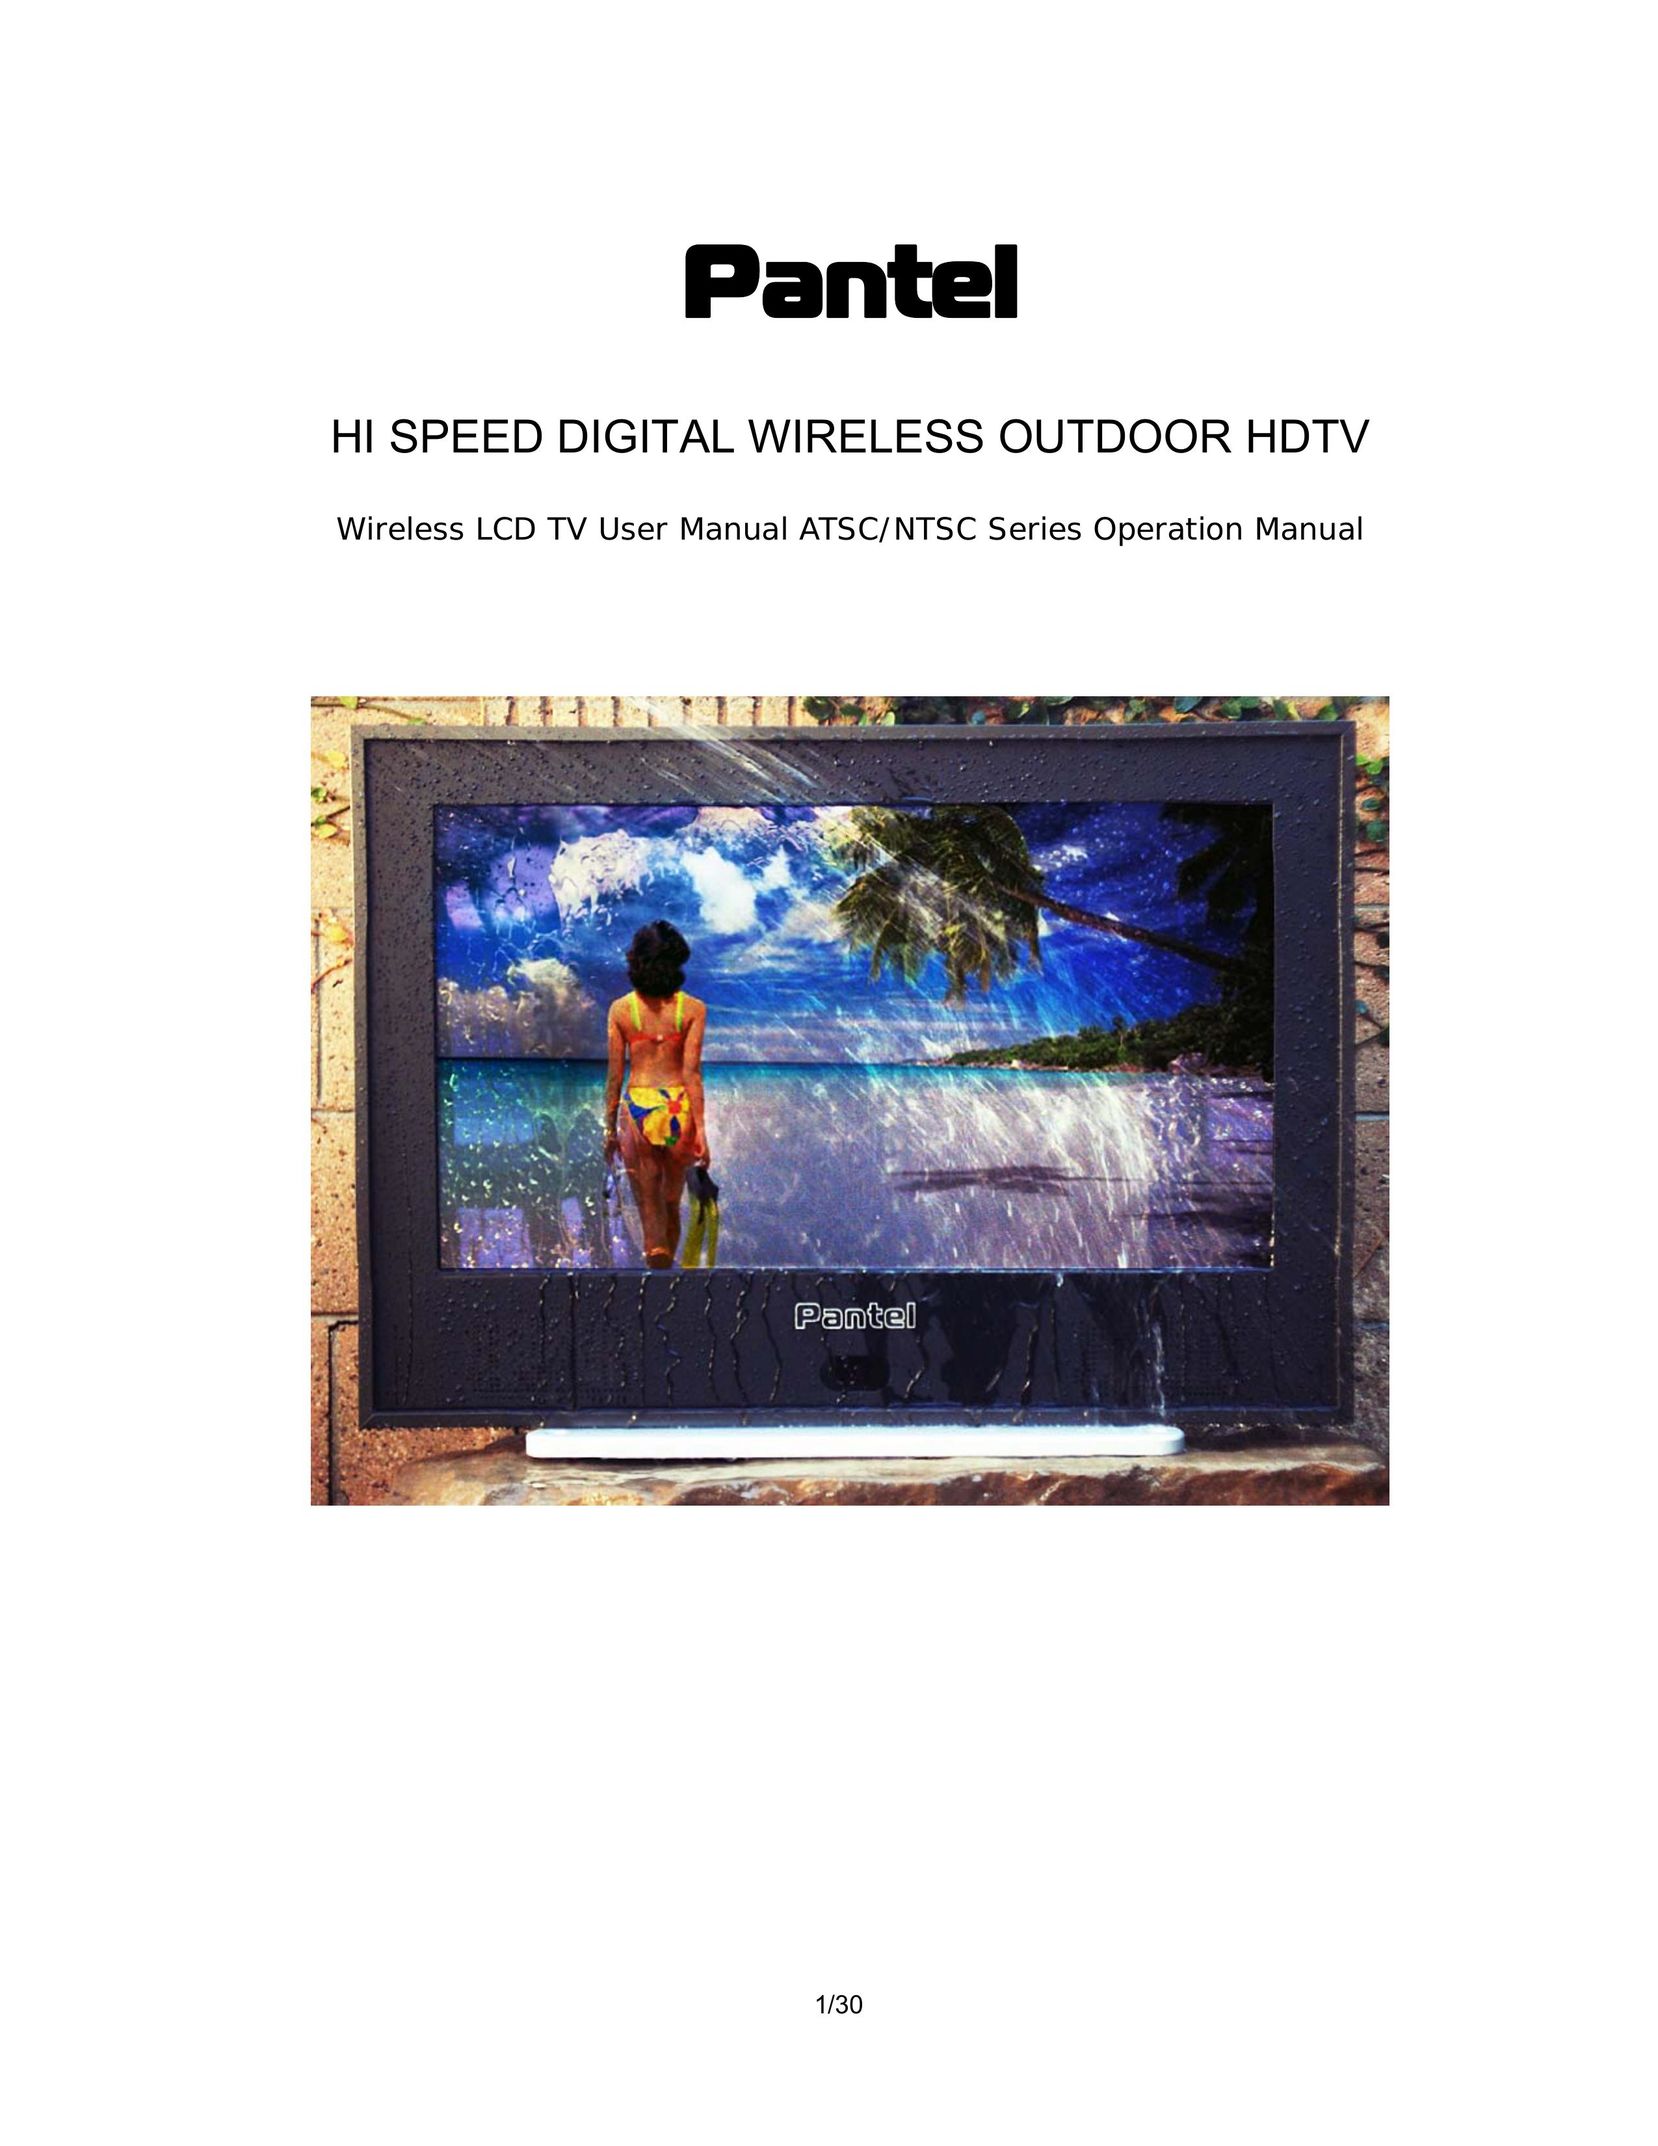 Pantel PAN420 Flat Panel Television User Manual